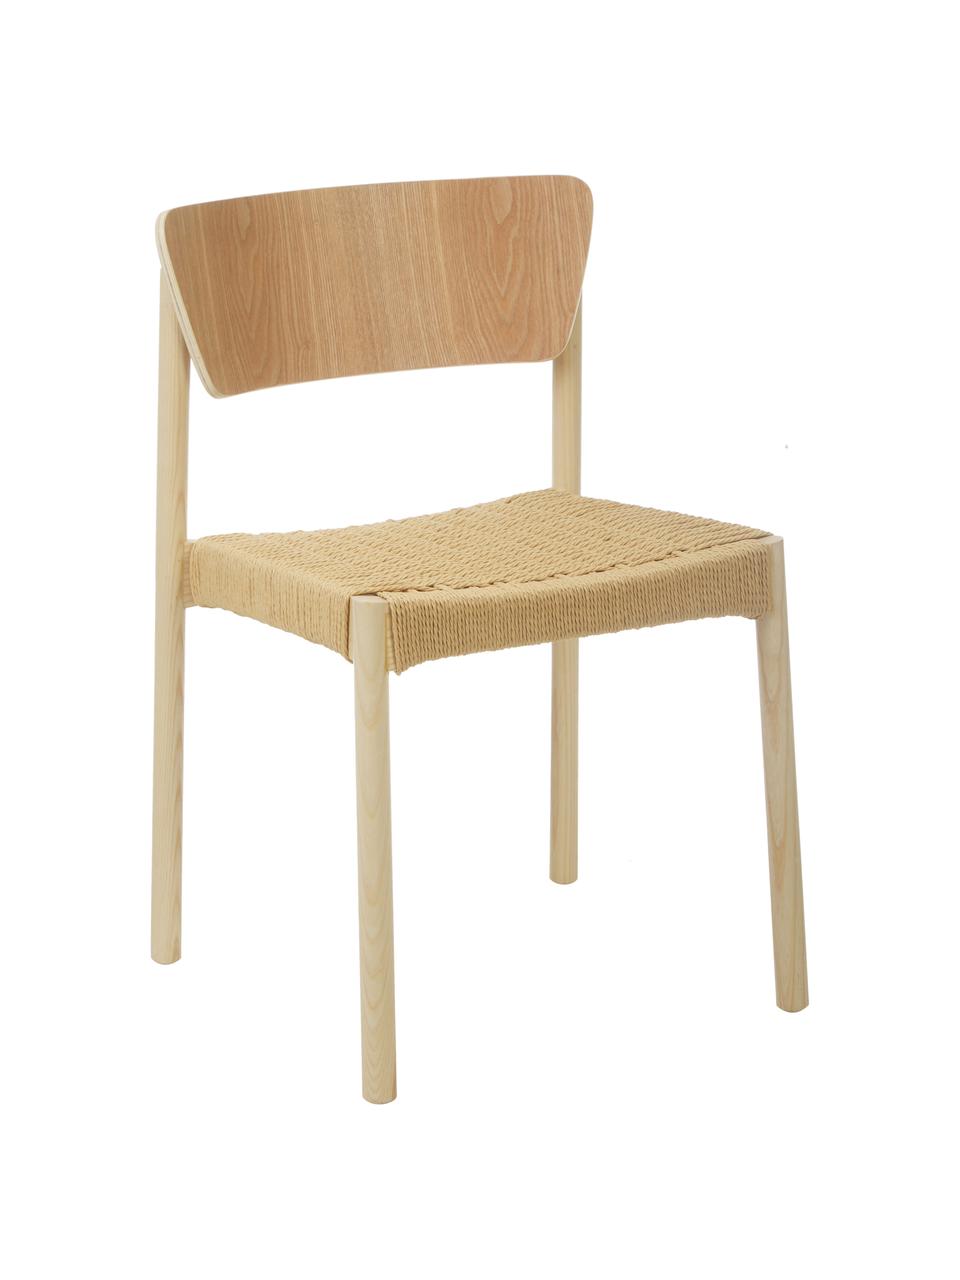 Drevená stolička s ratanovým sedadlom Danny, 2 ks, Bukové drevo, béžová, Š 52 x H 51 cm